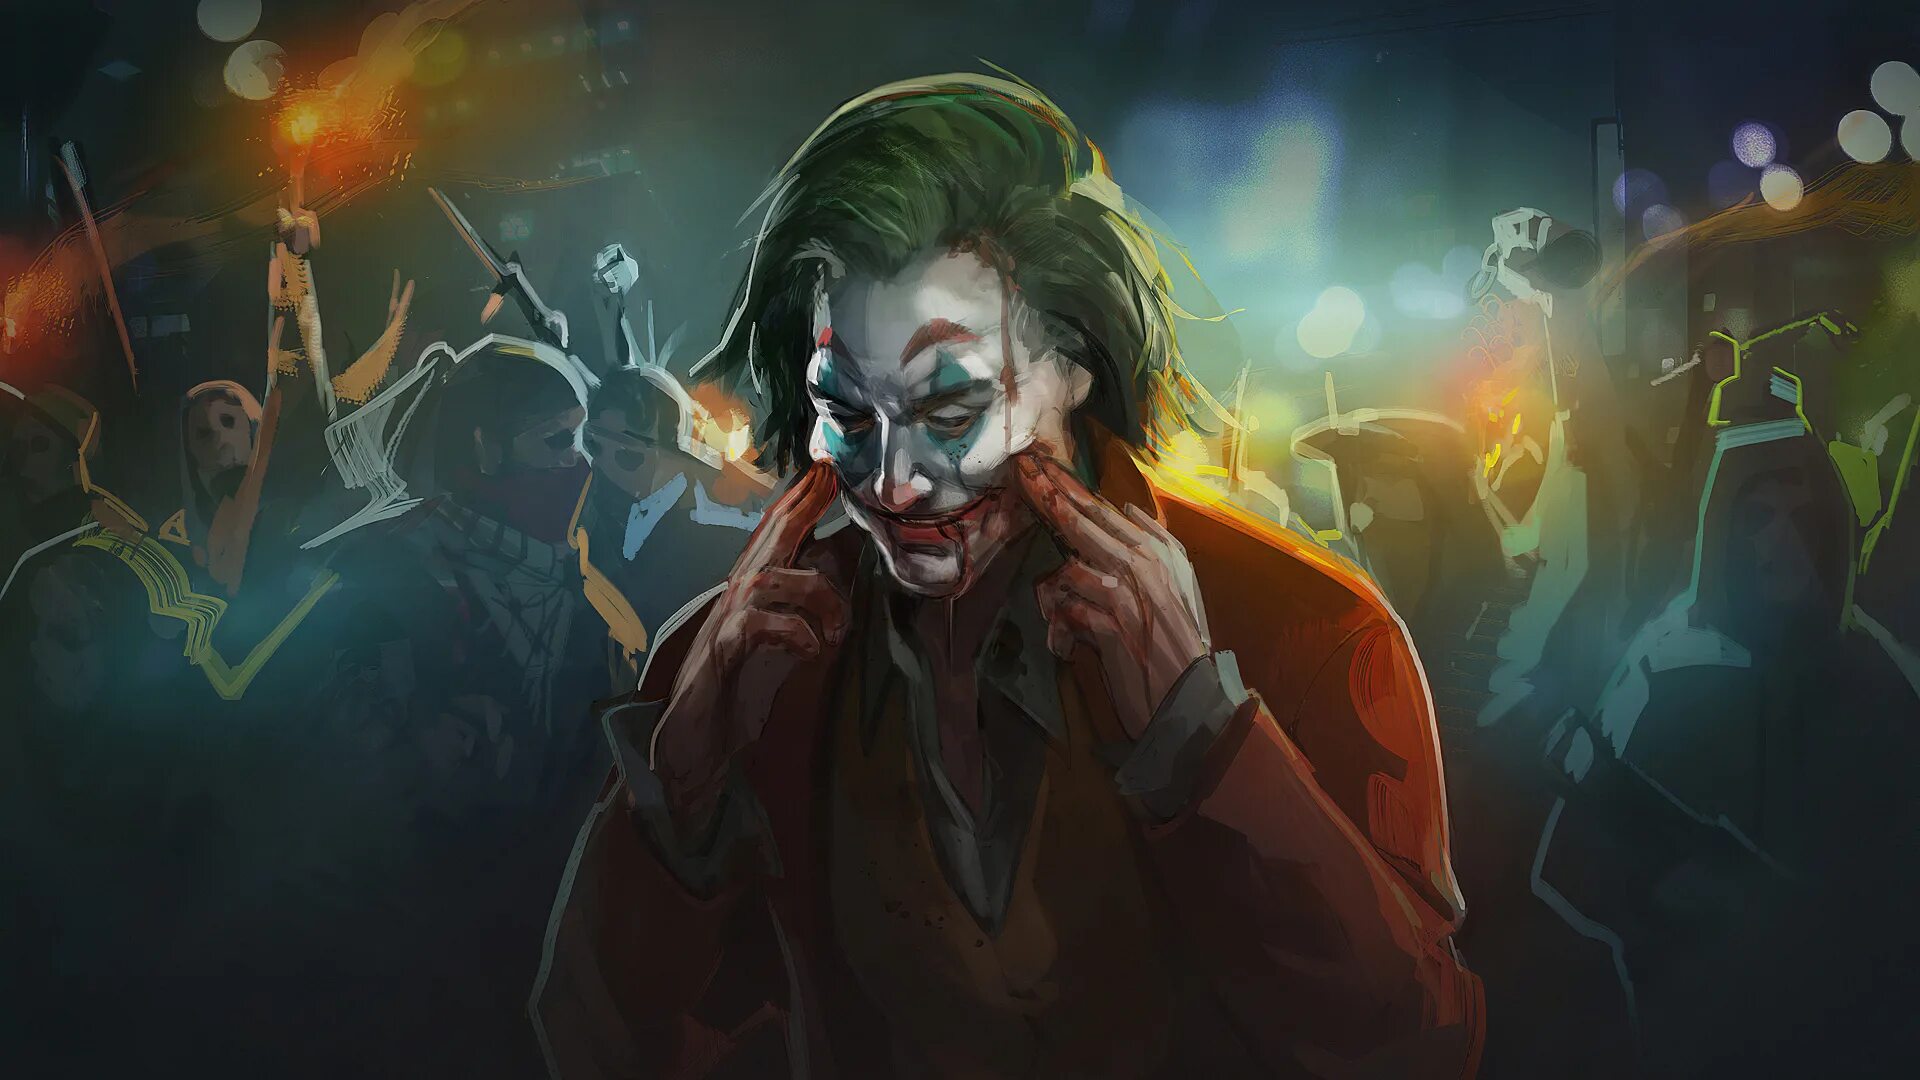 Joker art. Джокер 2019 Хоакин Феникс. Джокер Хоакин Феникс 2048 x 1152.